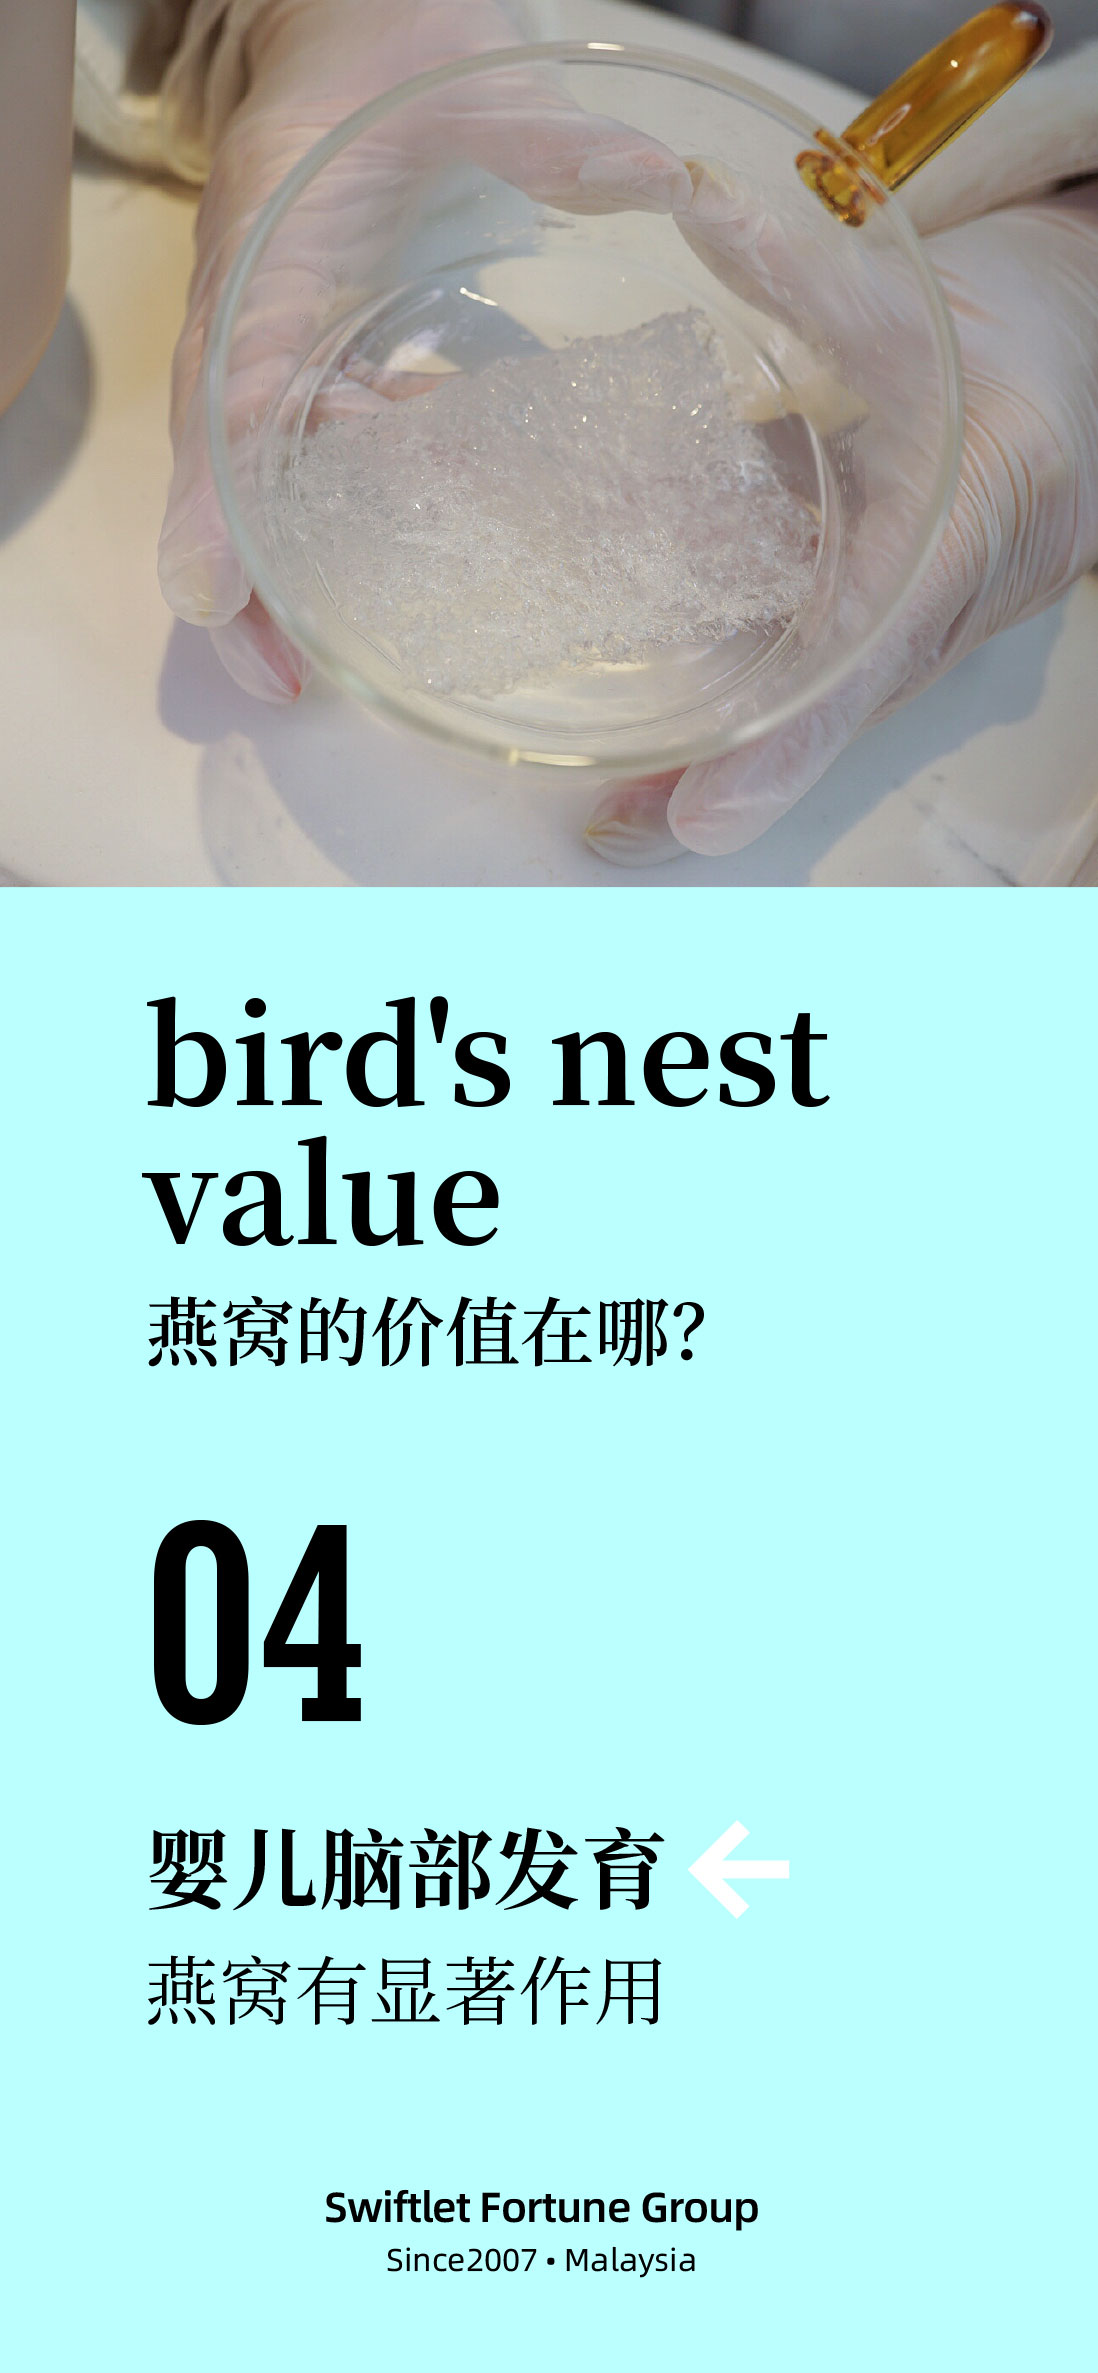 VALUE OF BIRD'S NEST 4